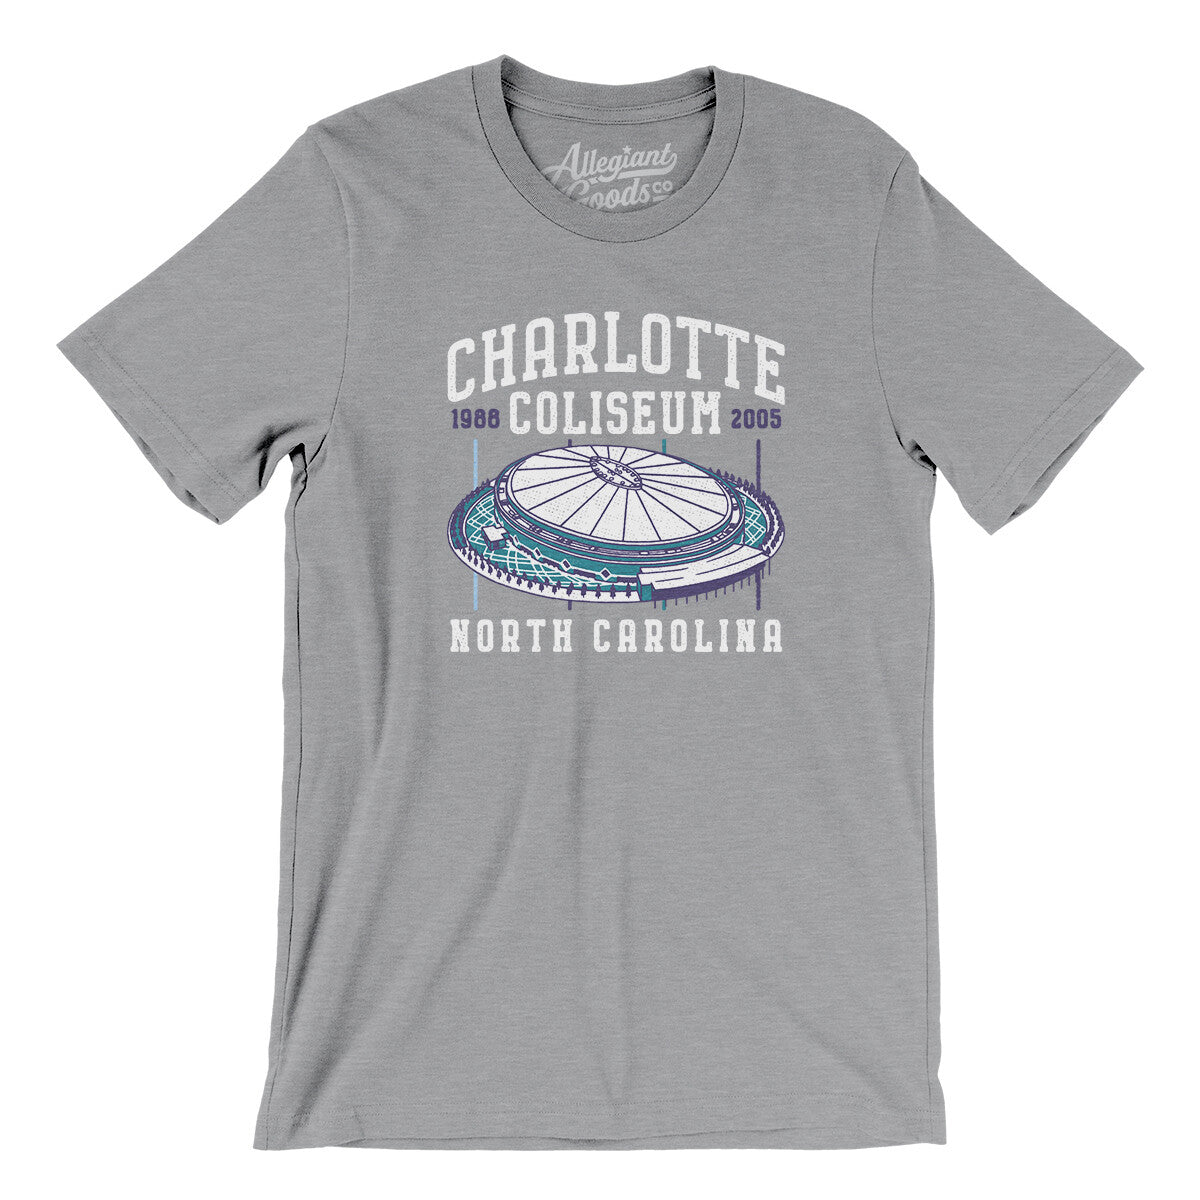 Charlotte Coliseum Men/Unisex T-Shirt - Allegiant Goods